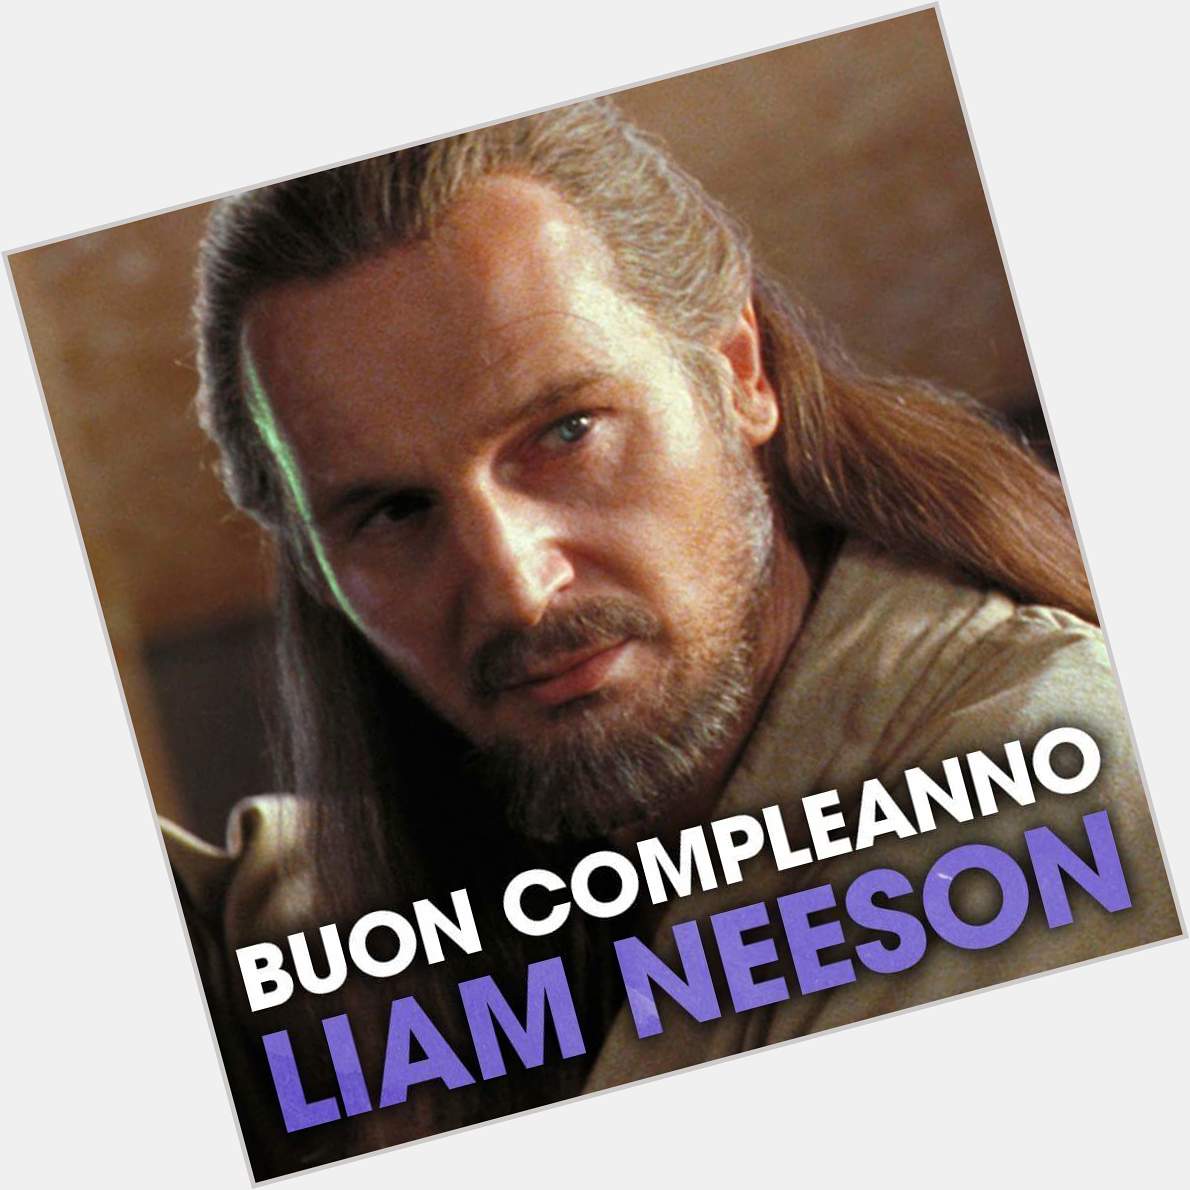 Happy birthday Liam Neeson! 